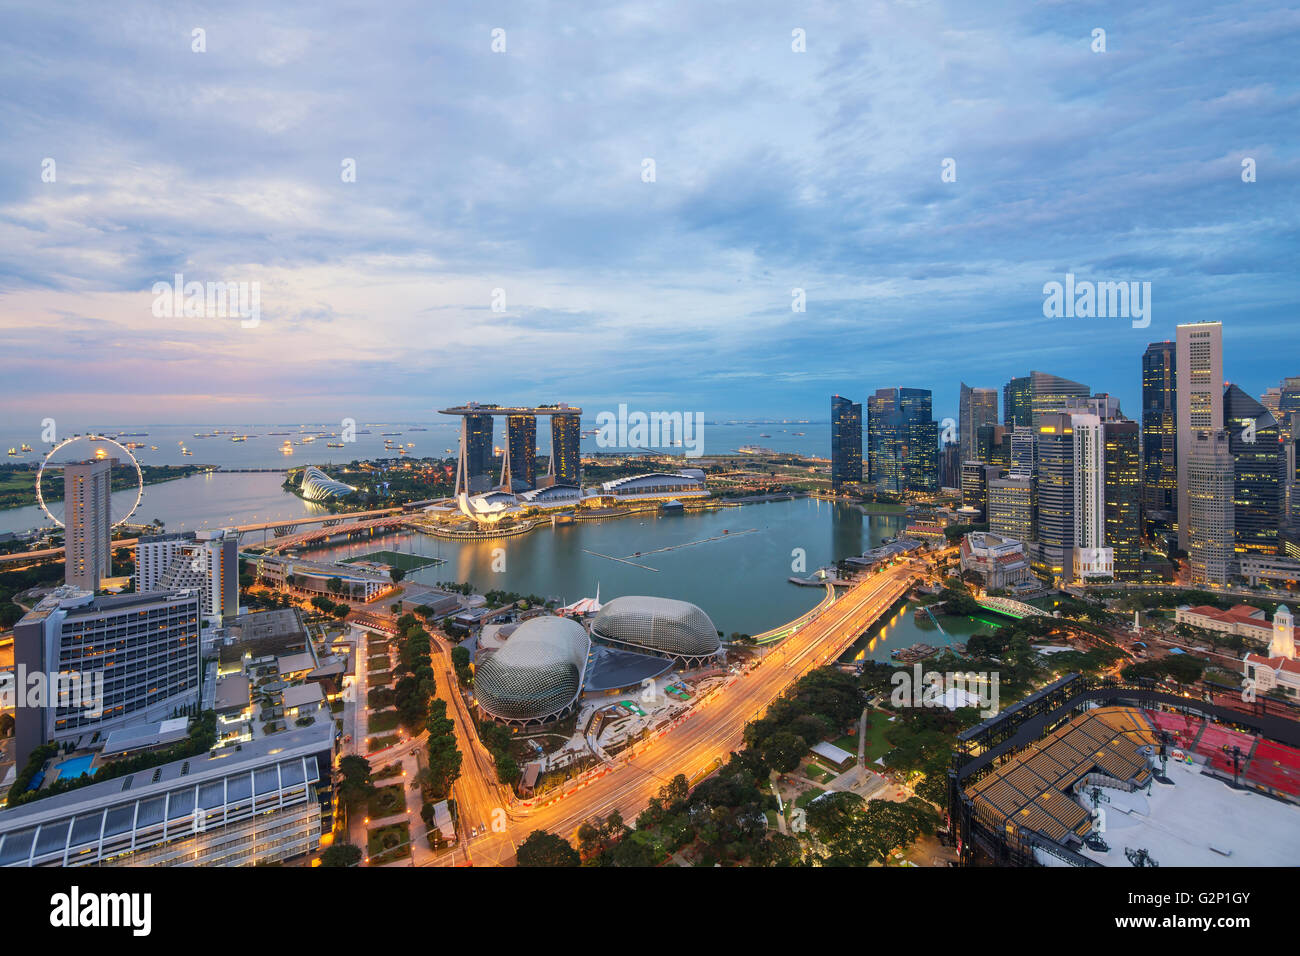 Vue aérienne de Marina Bay à Singapour ville dans la nuit.Singapour est un commerce mondial, la finance et le transport hub en Asie Banque D'Images